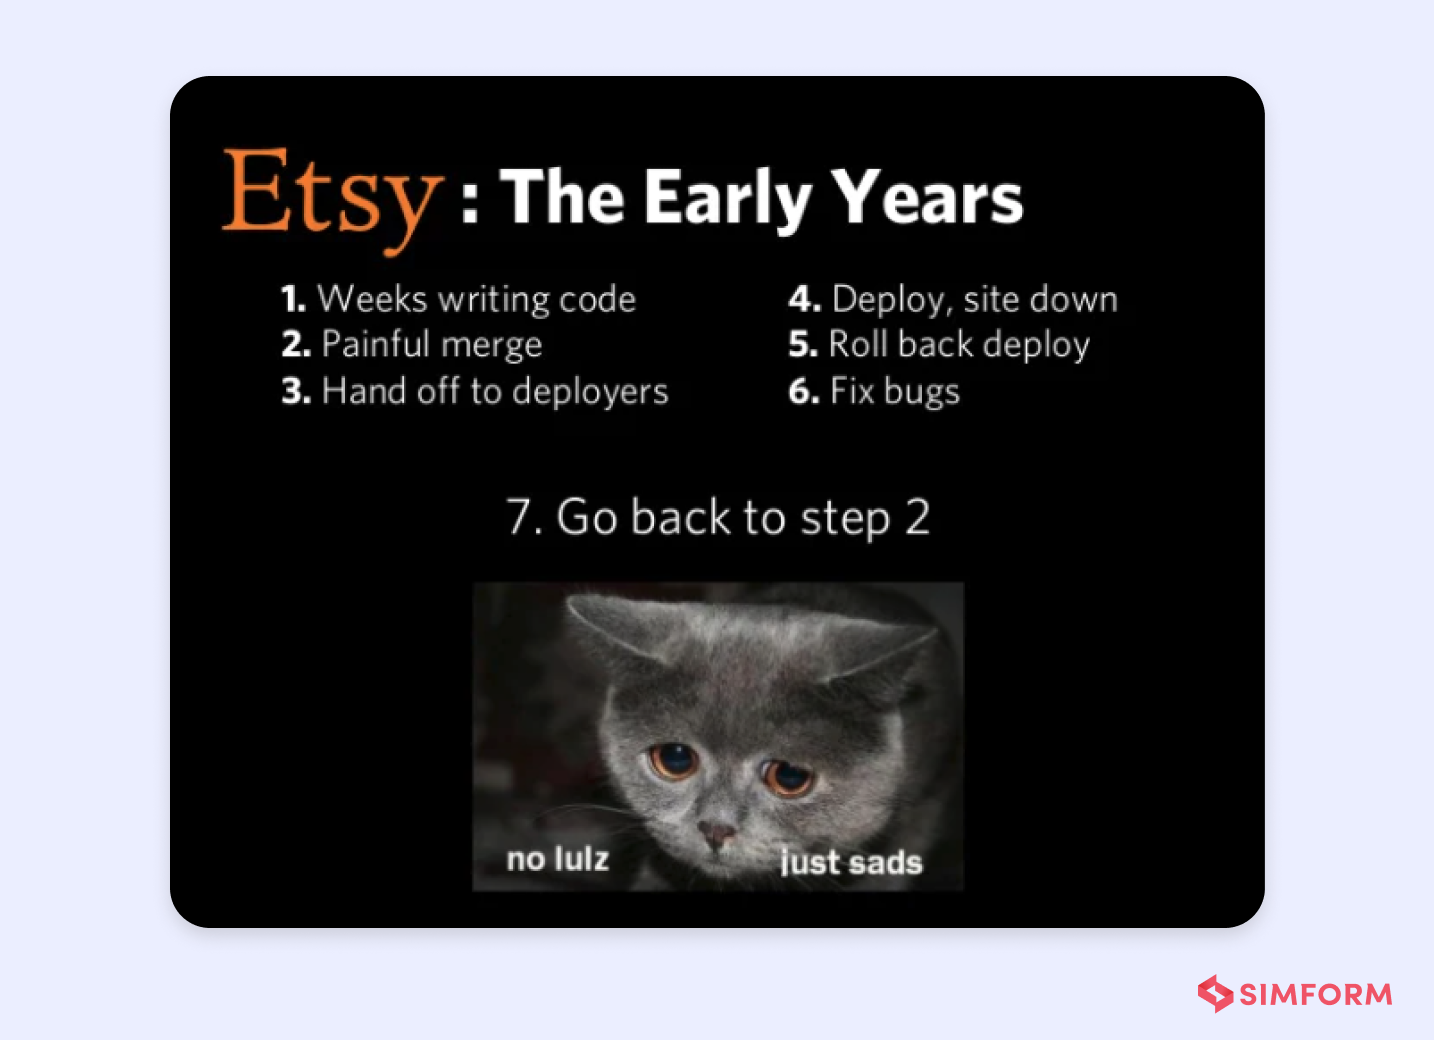 Etsy Early Years DevOps Strategy